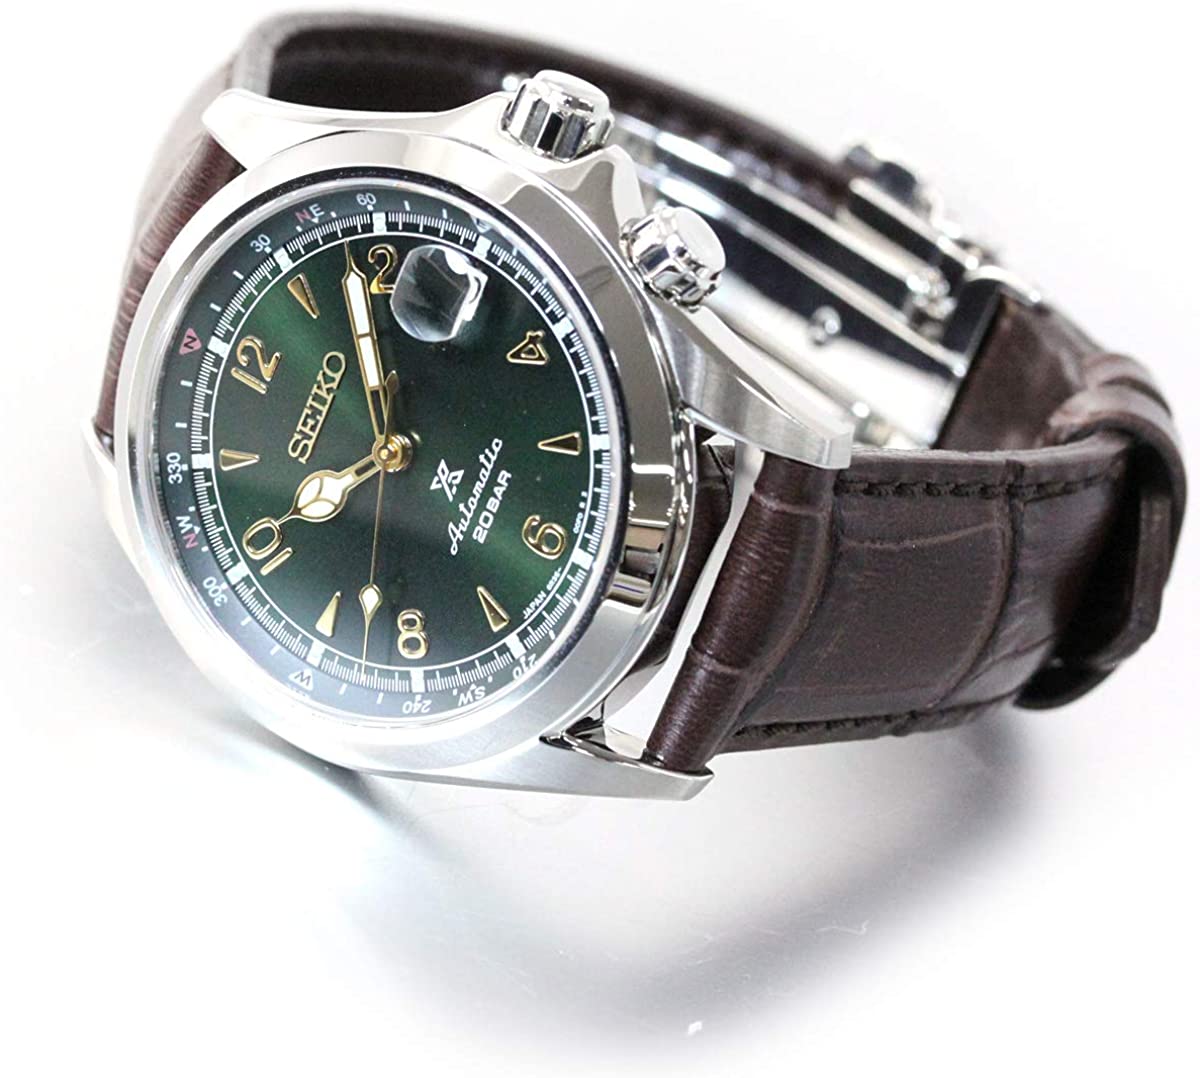 Đồng hồ Seiko cổ sẵn sàng (SEIKO SBDC091 Watch) Seiko Prospex Alpinist  Limited Model SBDC091 Made in Japan [Hộp & Sách hướng dẫn của Nhà sản xuất  + Người bán bảo hành